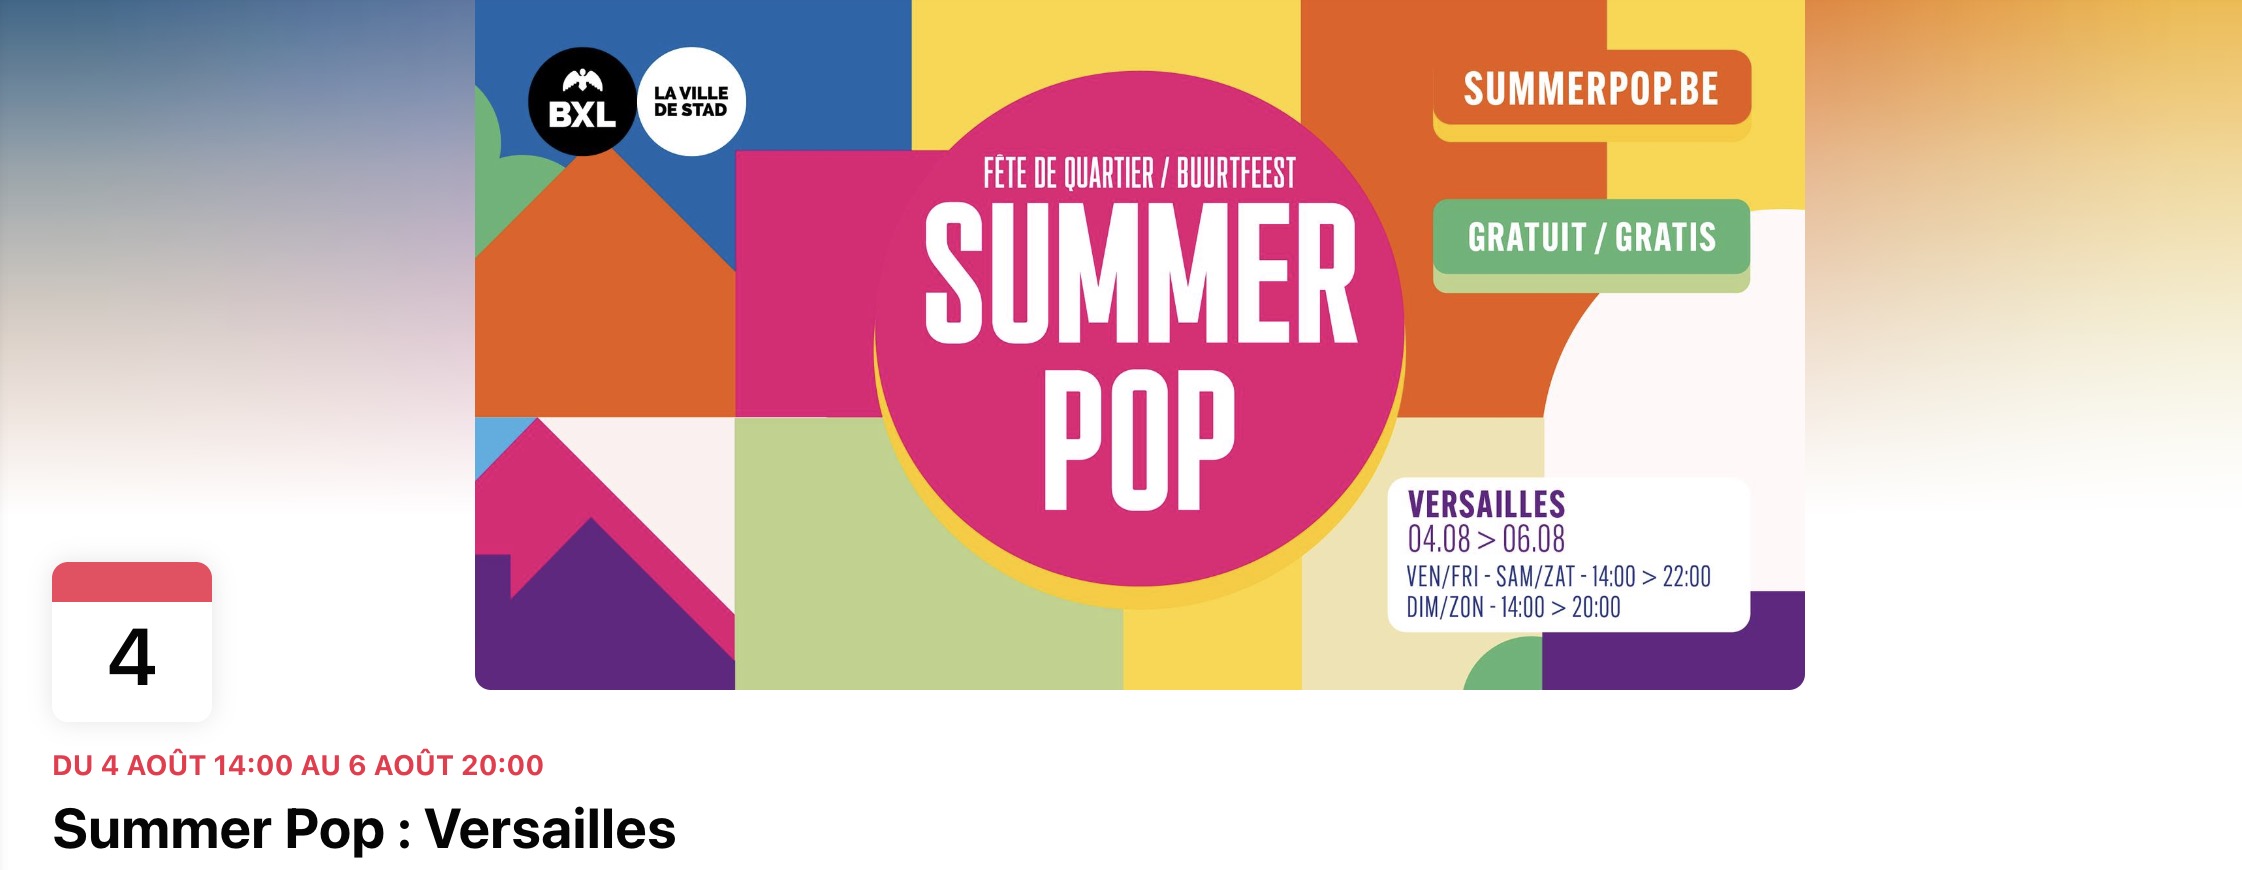 Du 4 au 6/08, Summer Pop revient à Versailles !